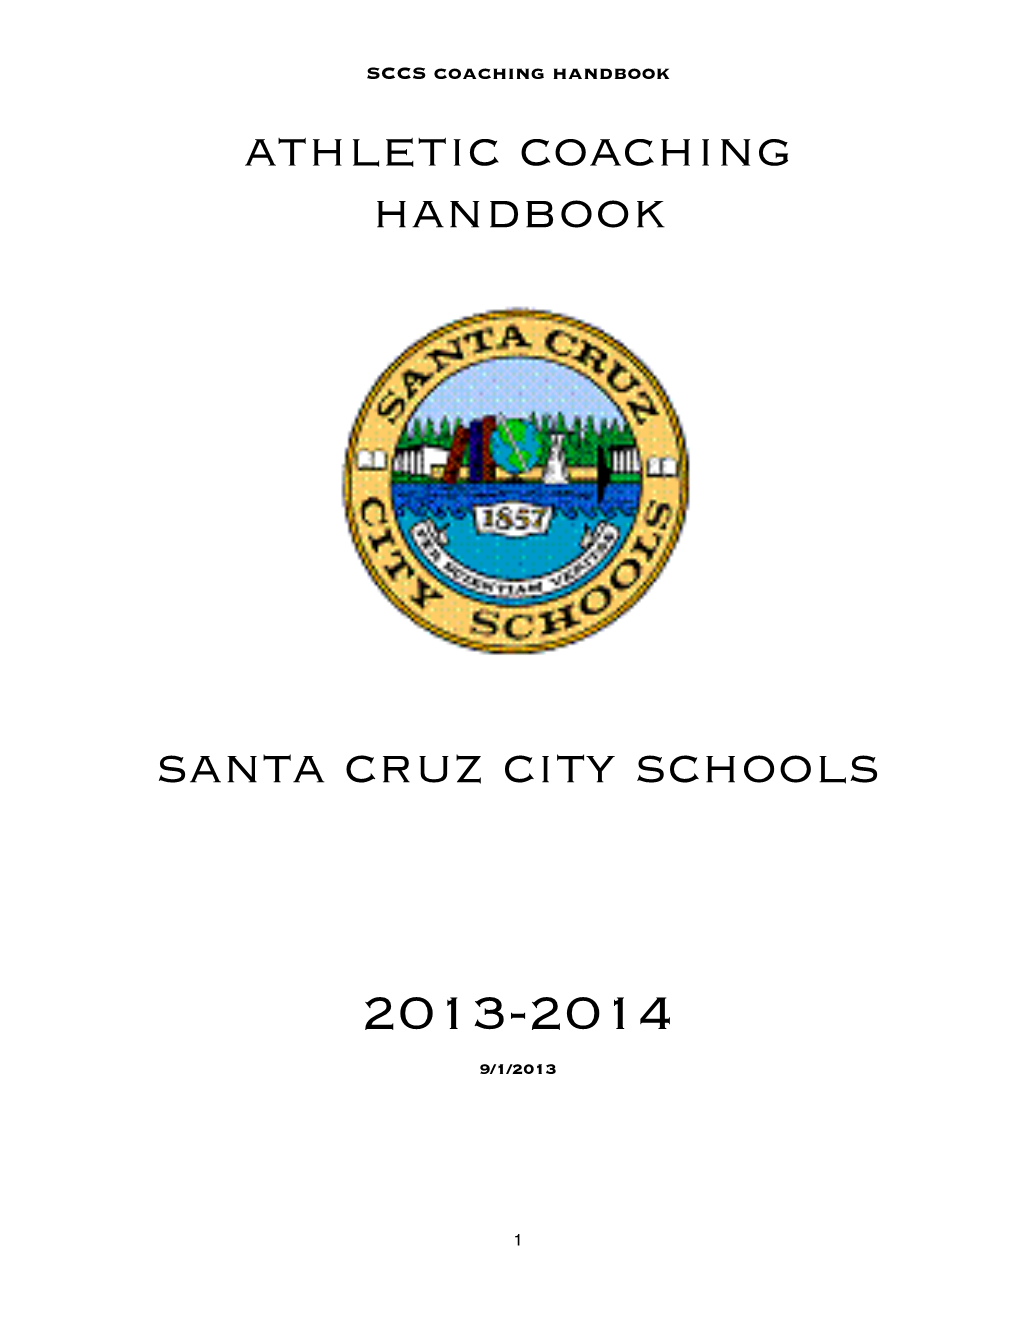 Athletic Coaching Handbook Santa Cruz City Schools 2013-2014